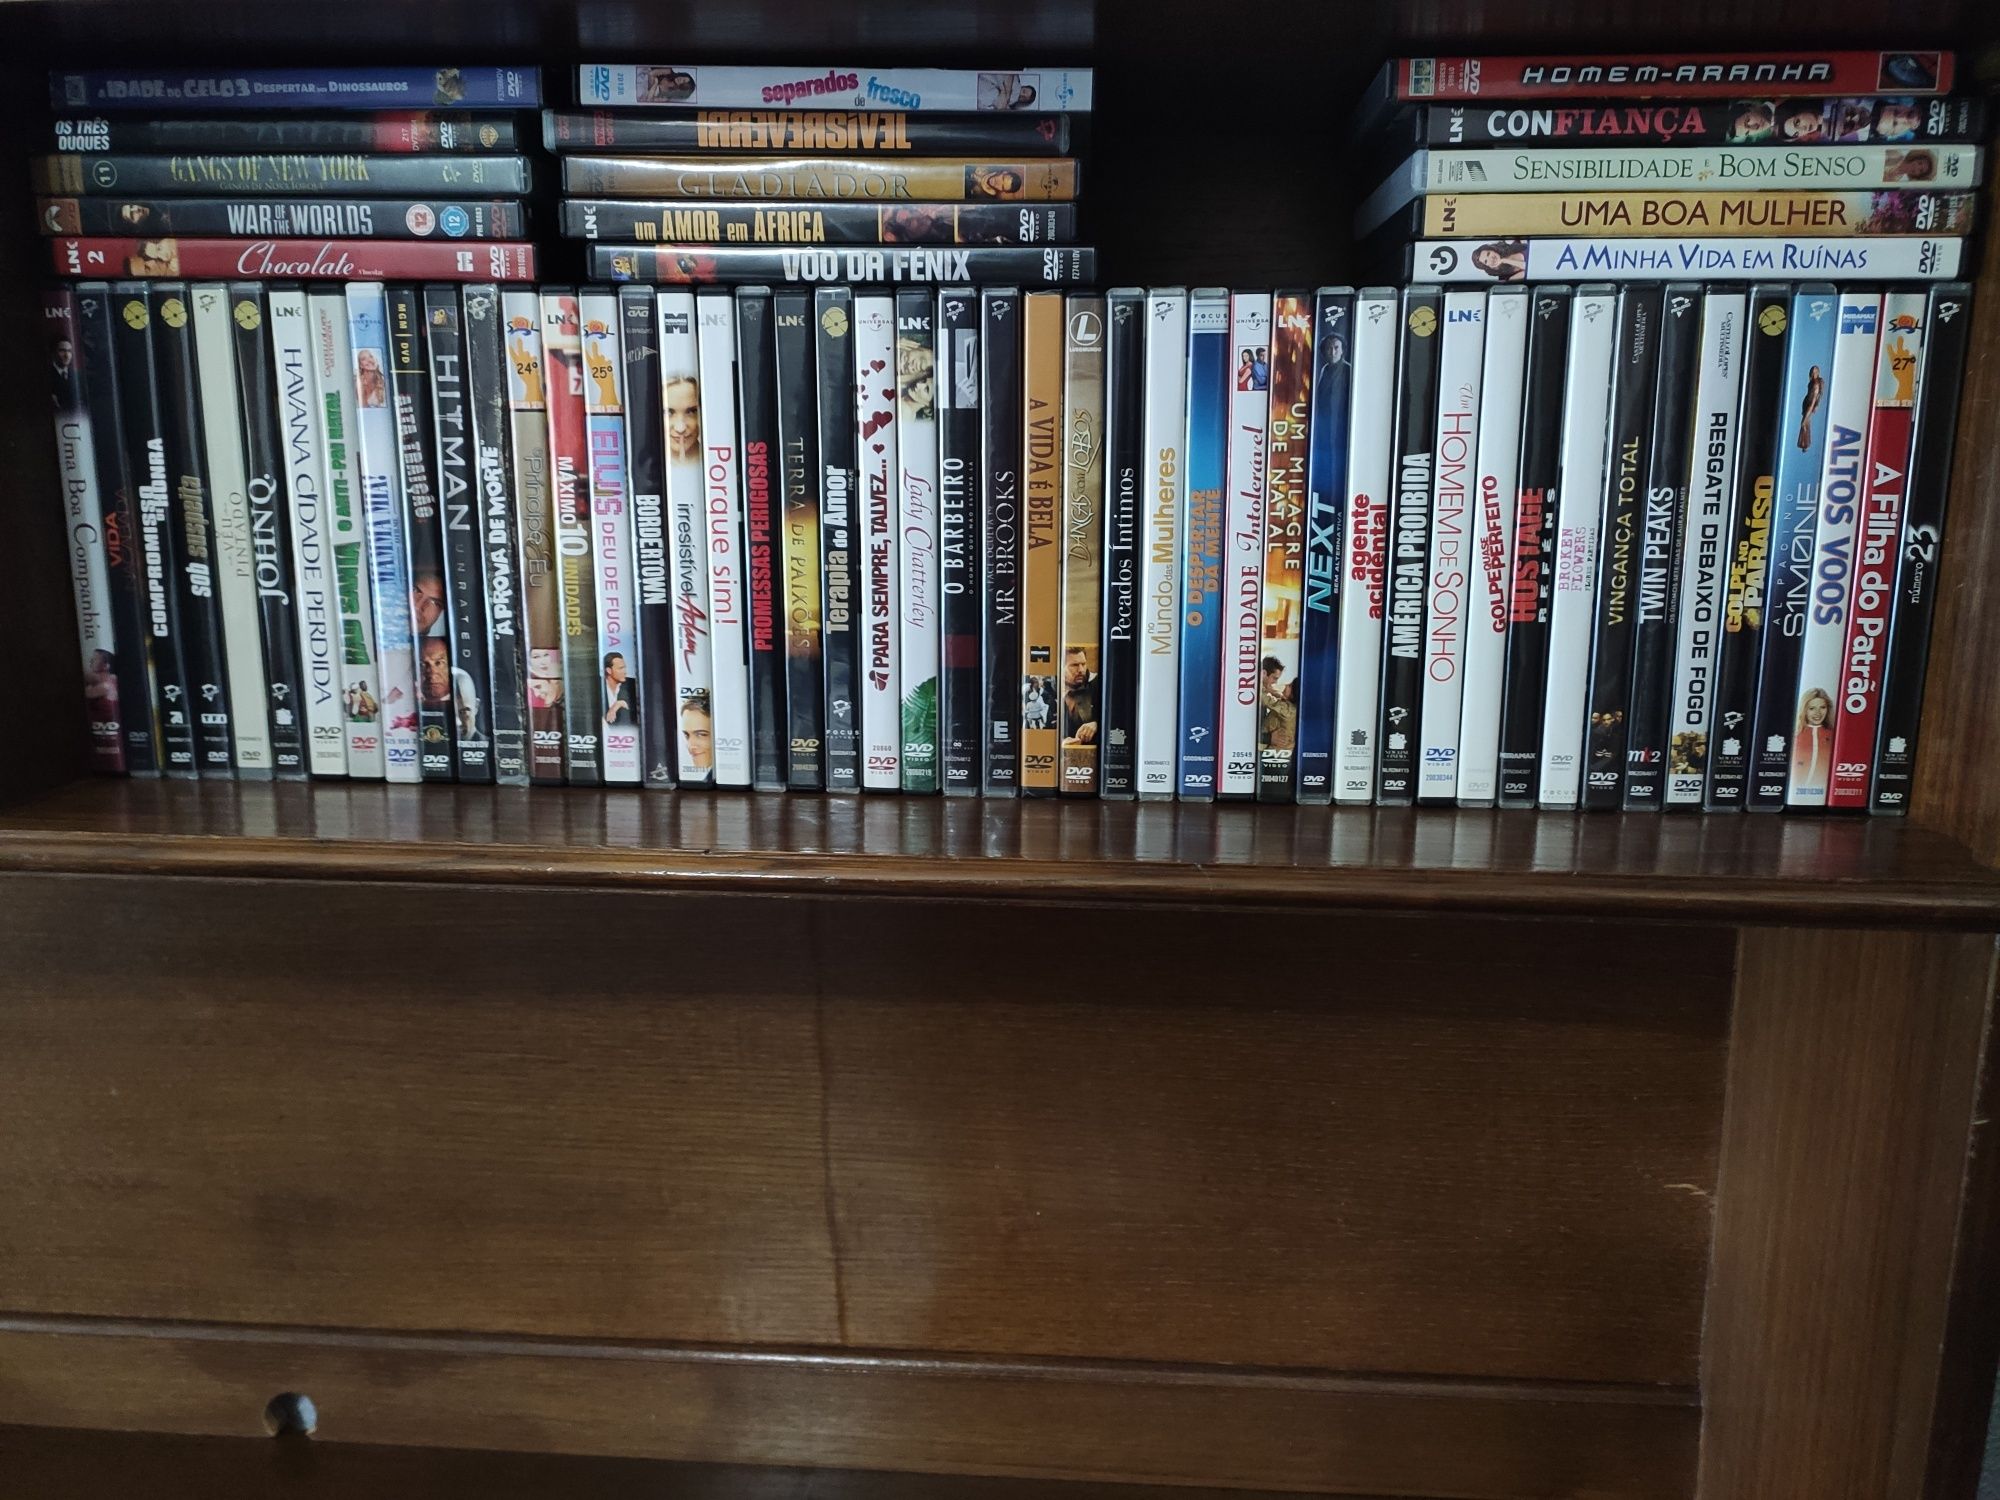 Colecção de Filmes e Séries em DVD - novos